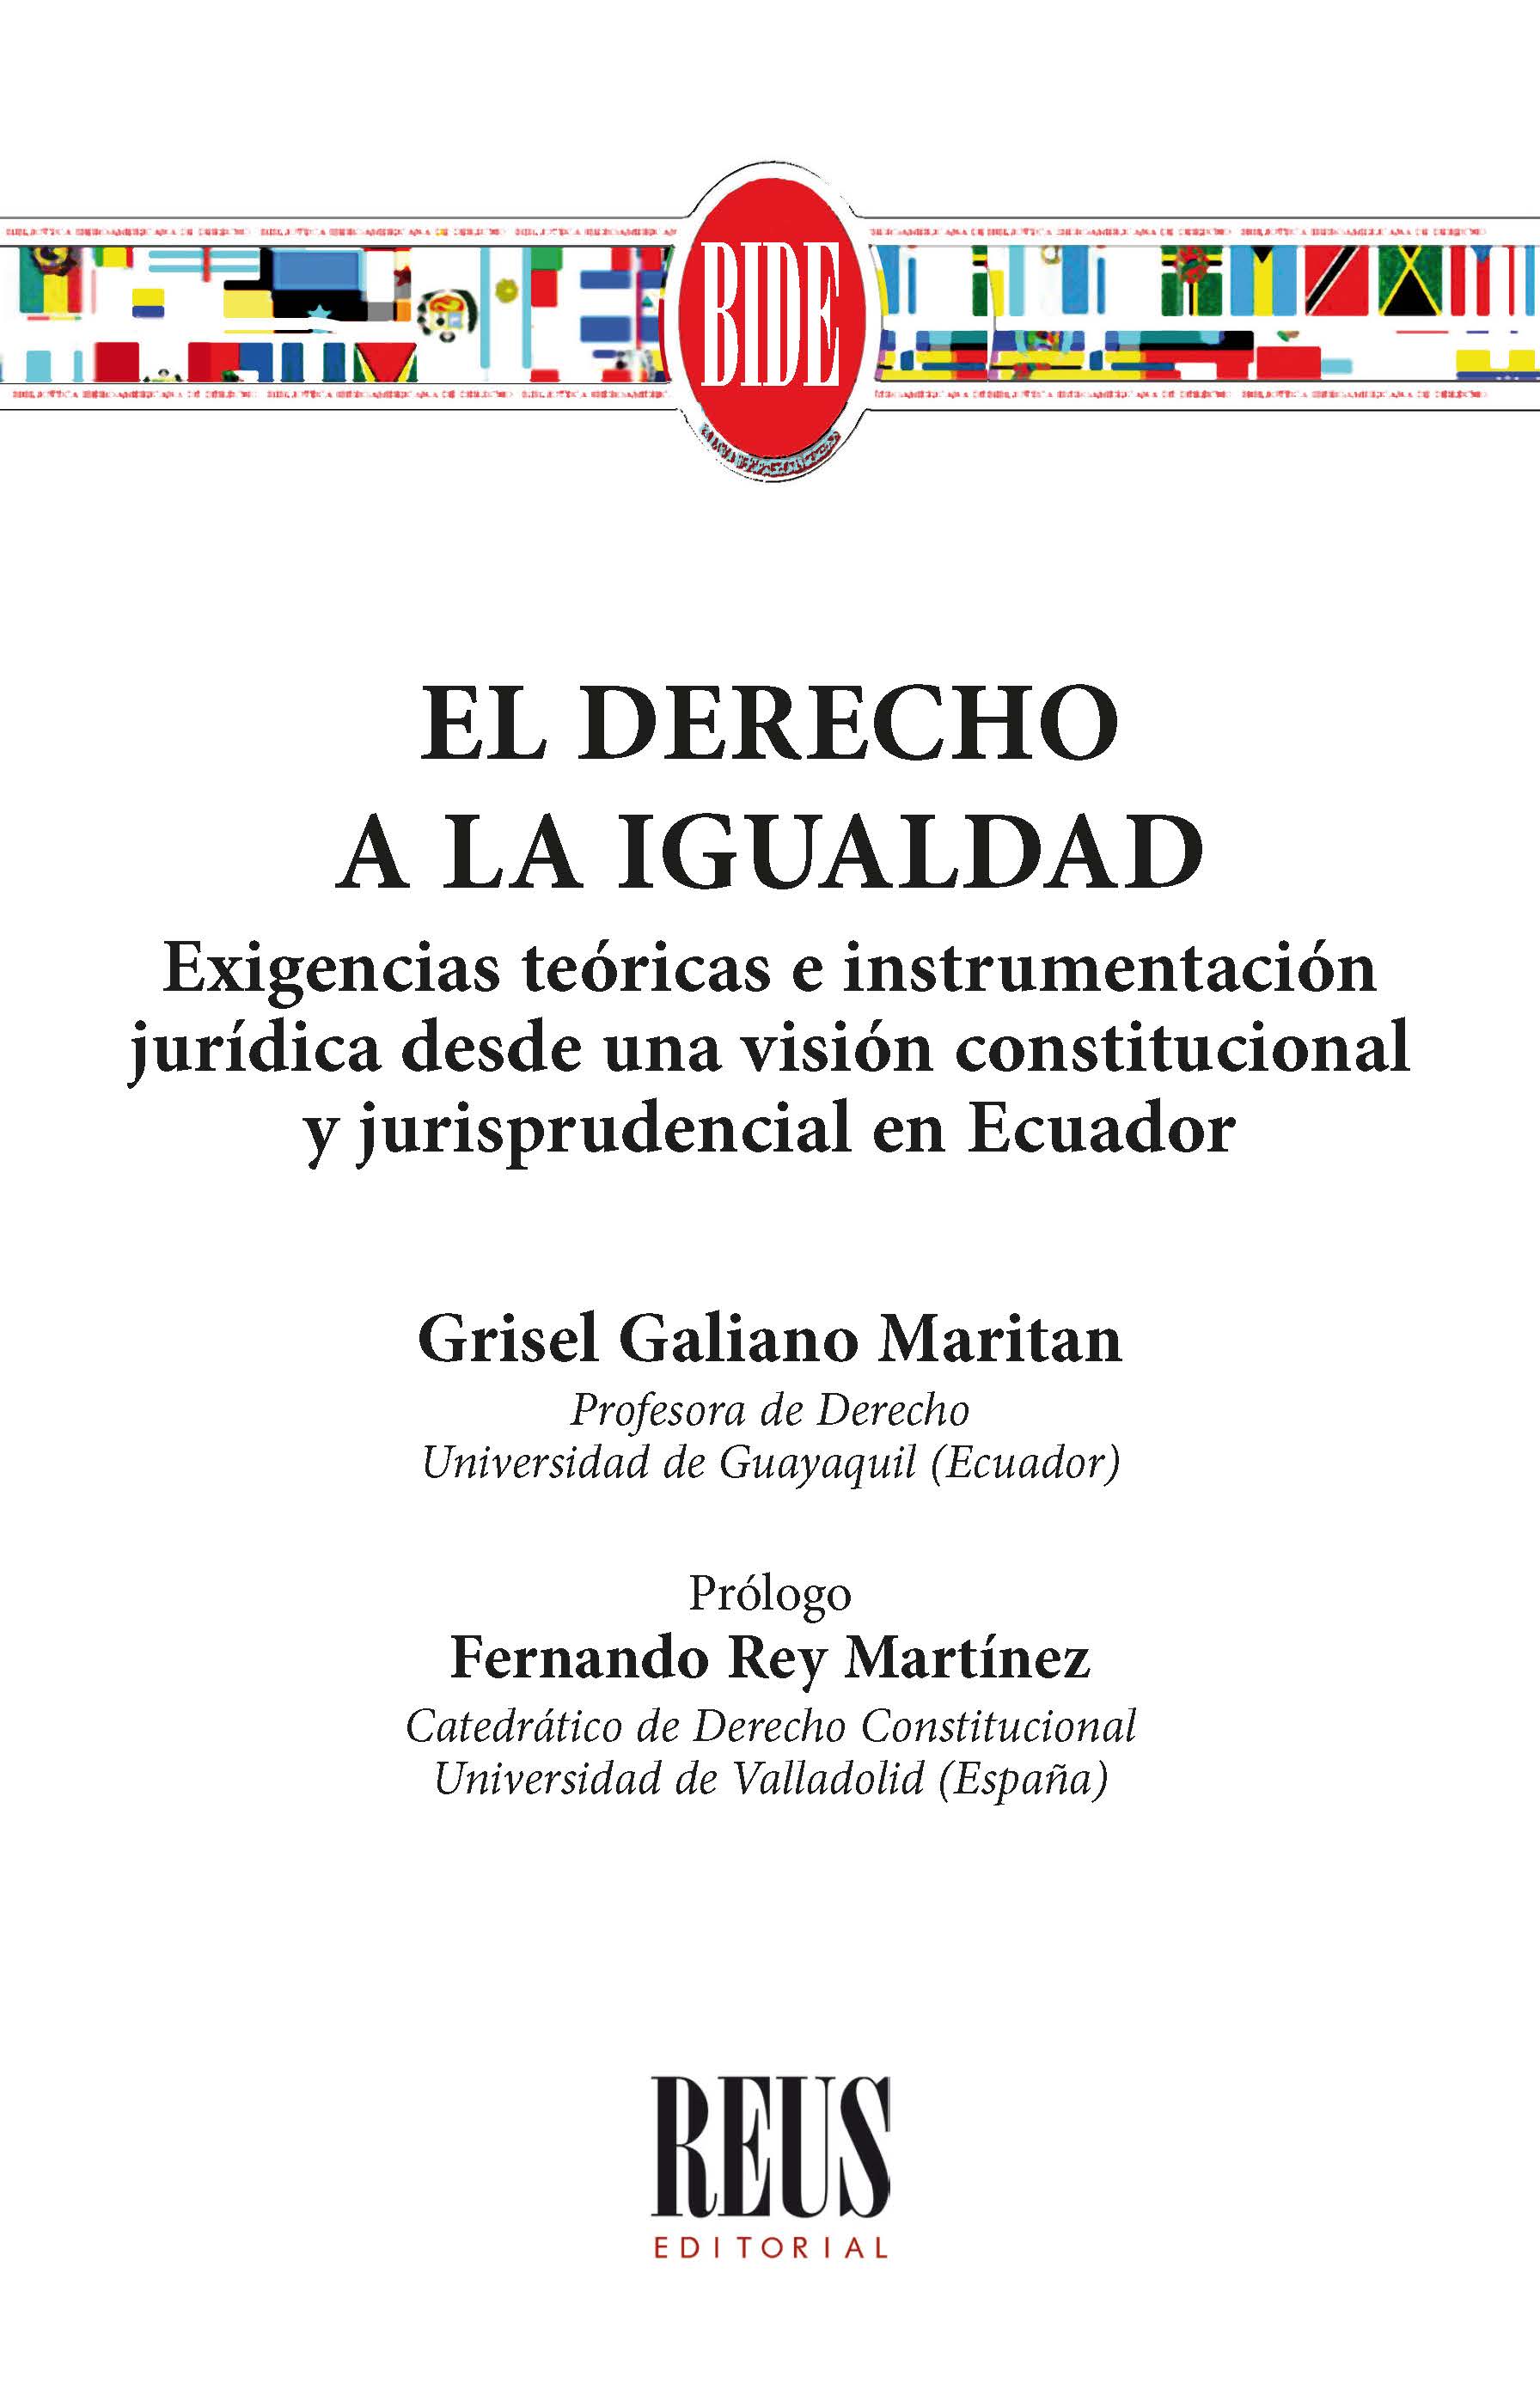 El derecho a la igualdad: exigencias teóricas e instrumentación jurídica desde una visión constitucional y jurisprudencial en Ecuador. 9788429027273